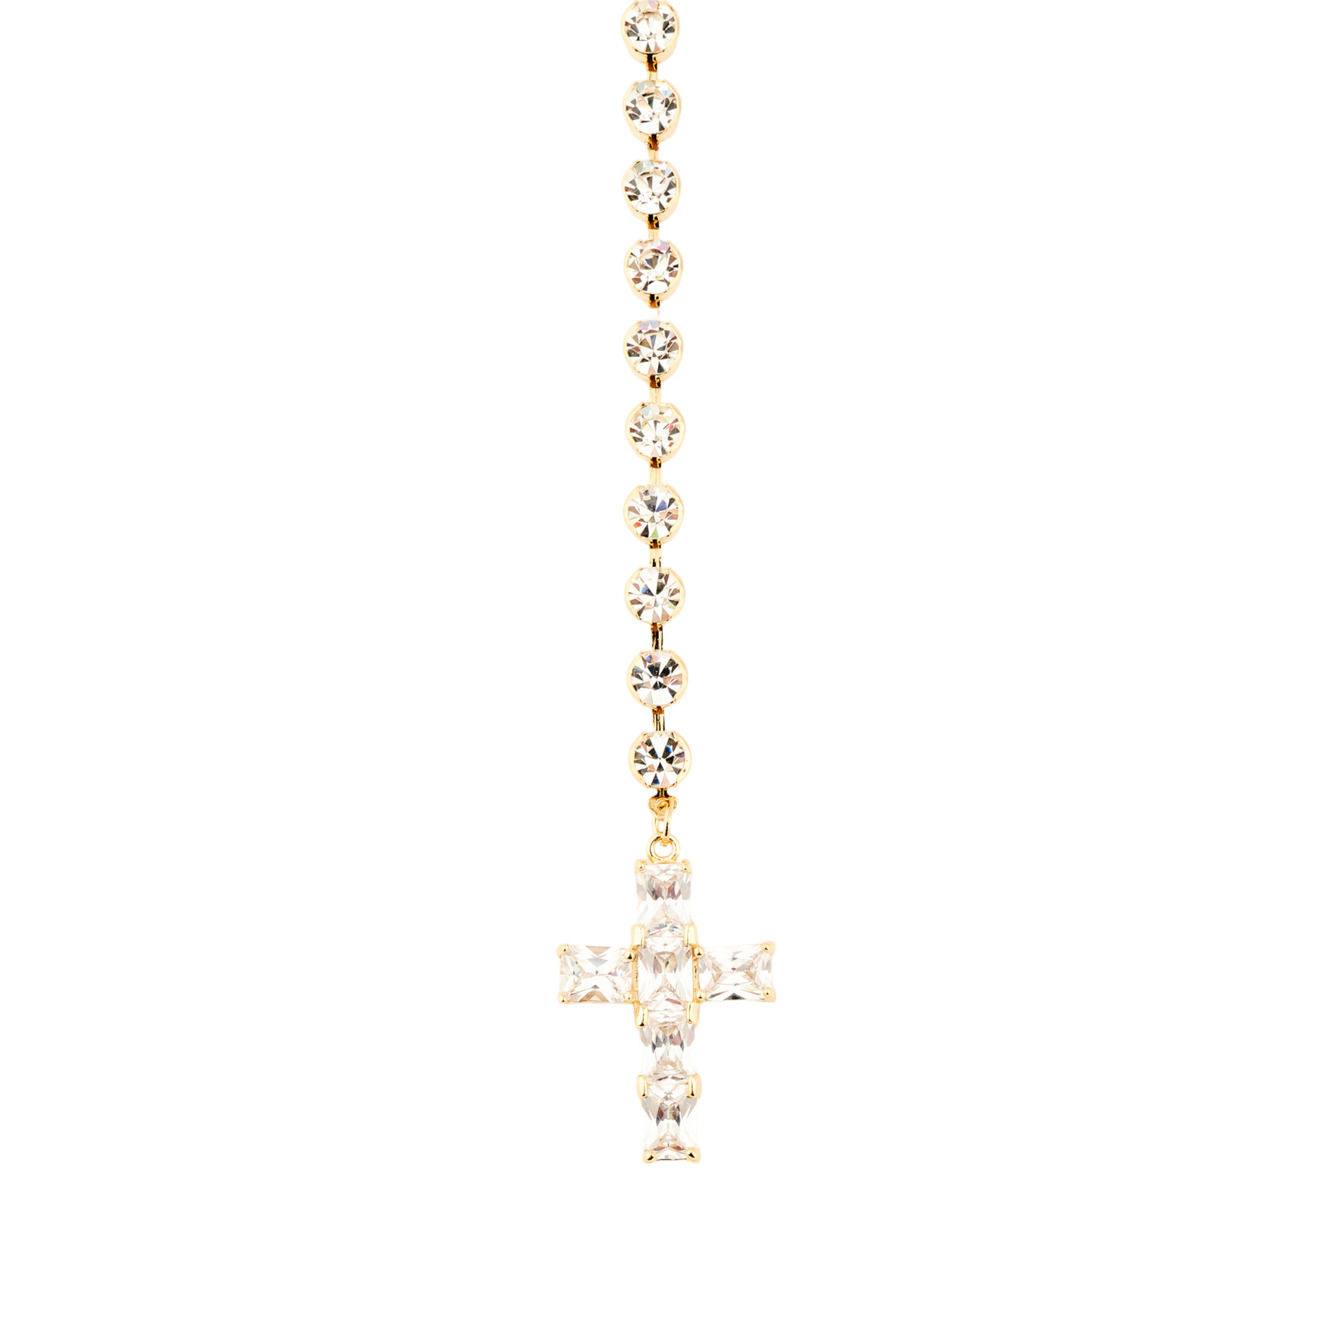 Herald Percy Золотистый сотуар с белыми кристаллами и подвеской крестом herald percy золотистое длинное колье с крестом с кристаллами